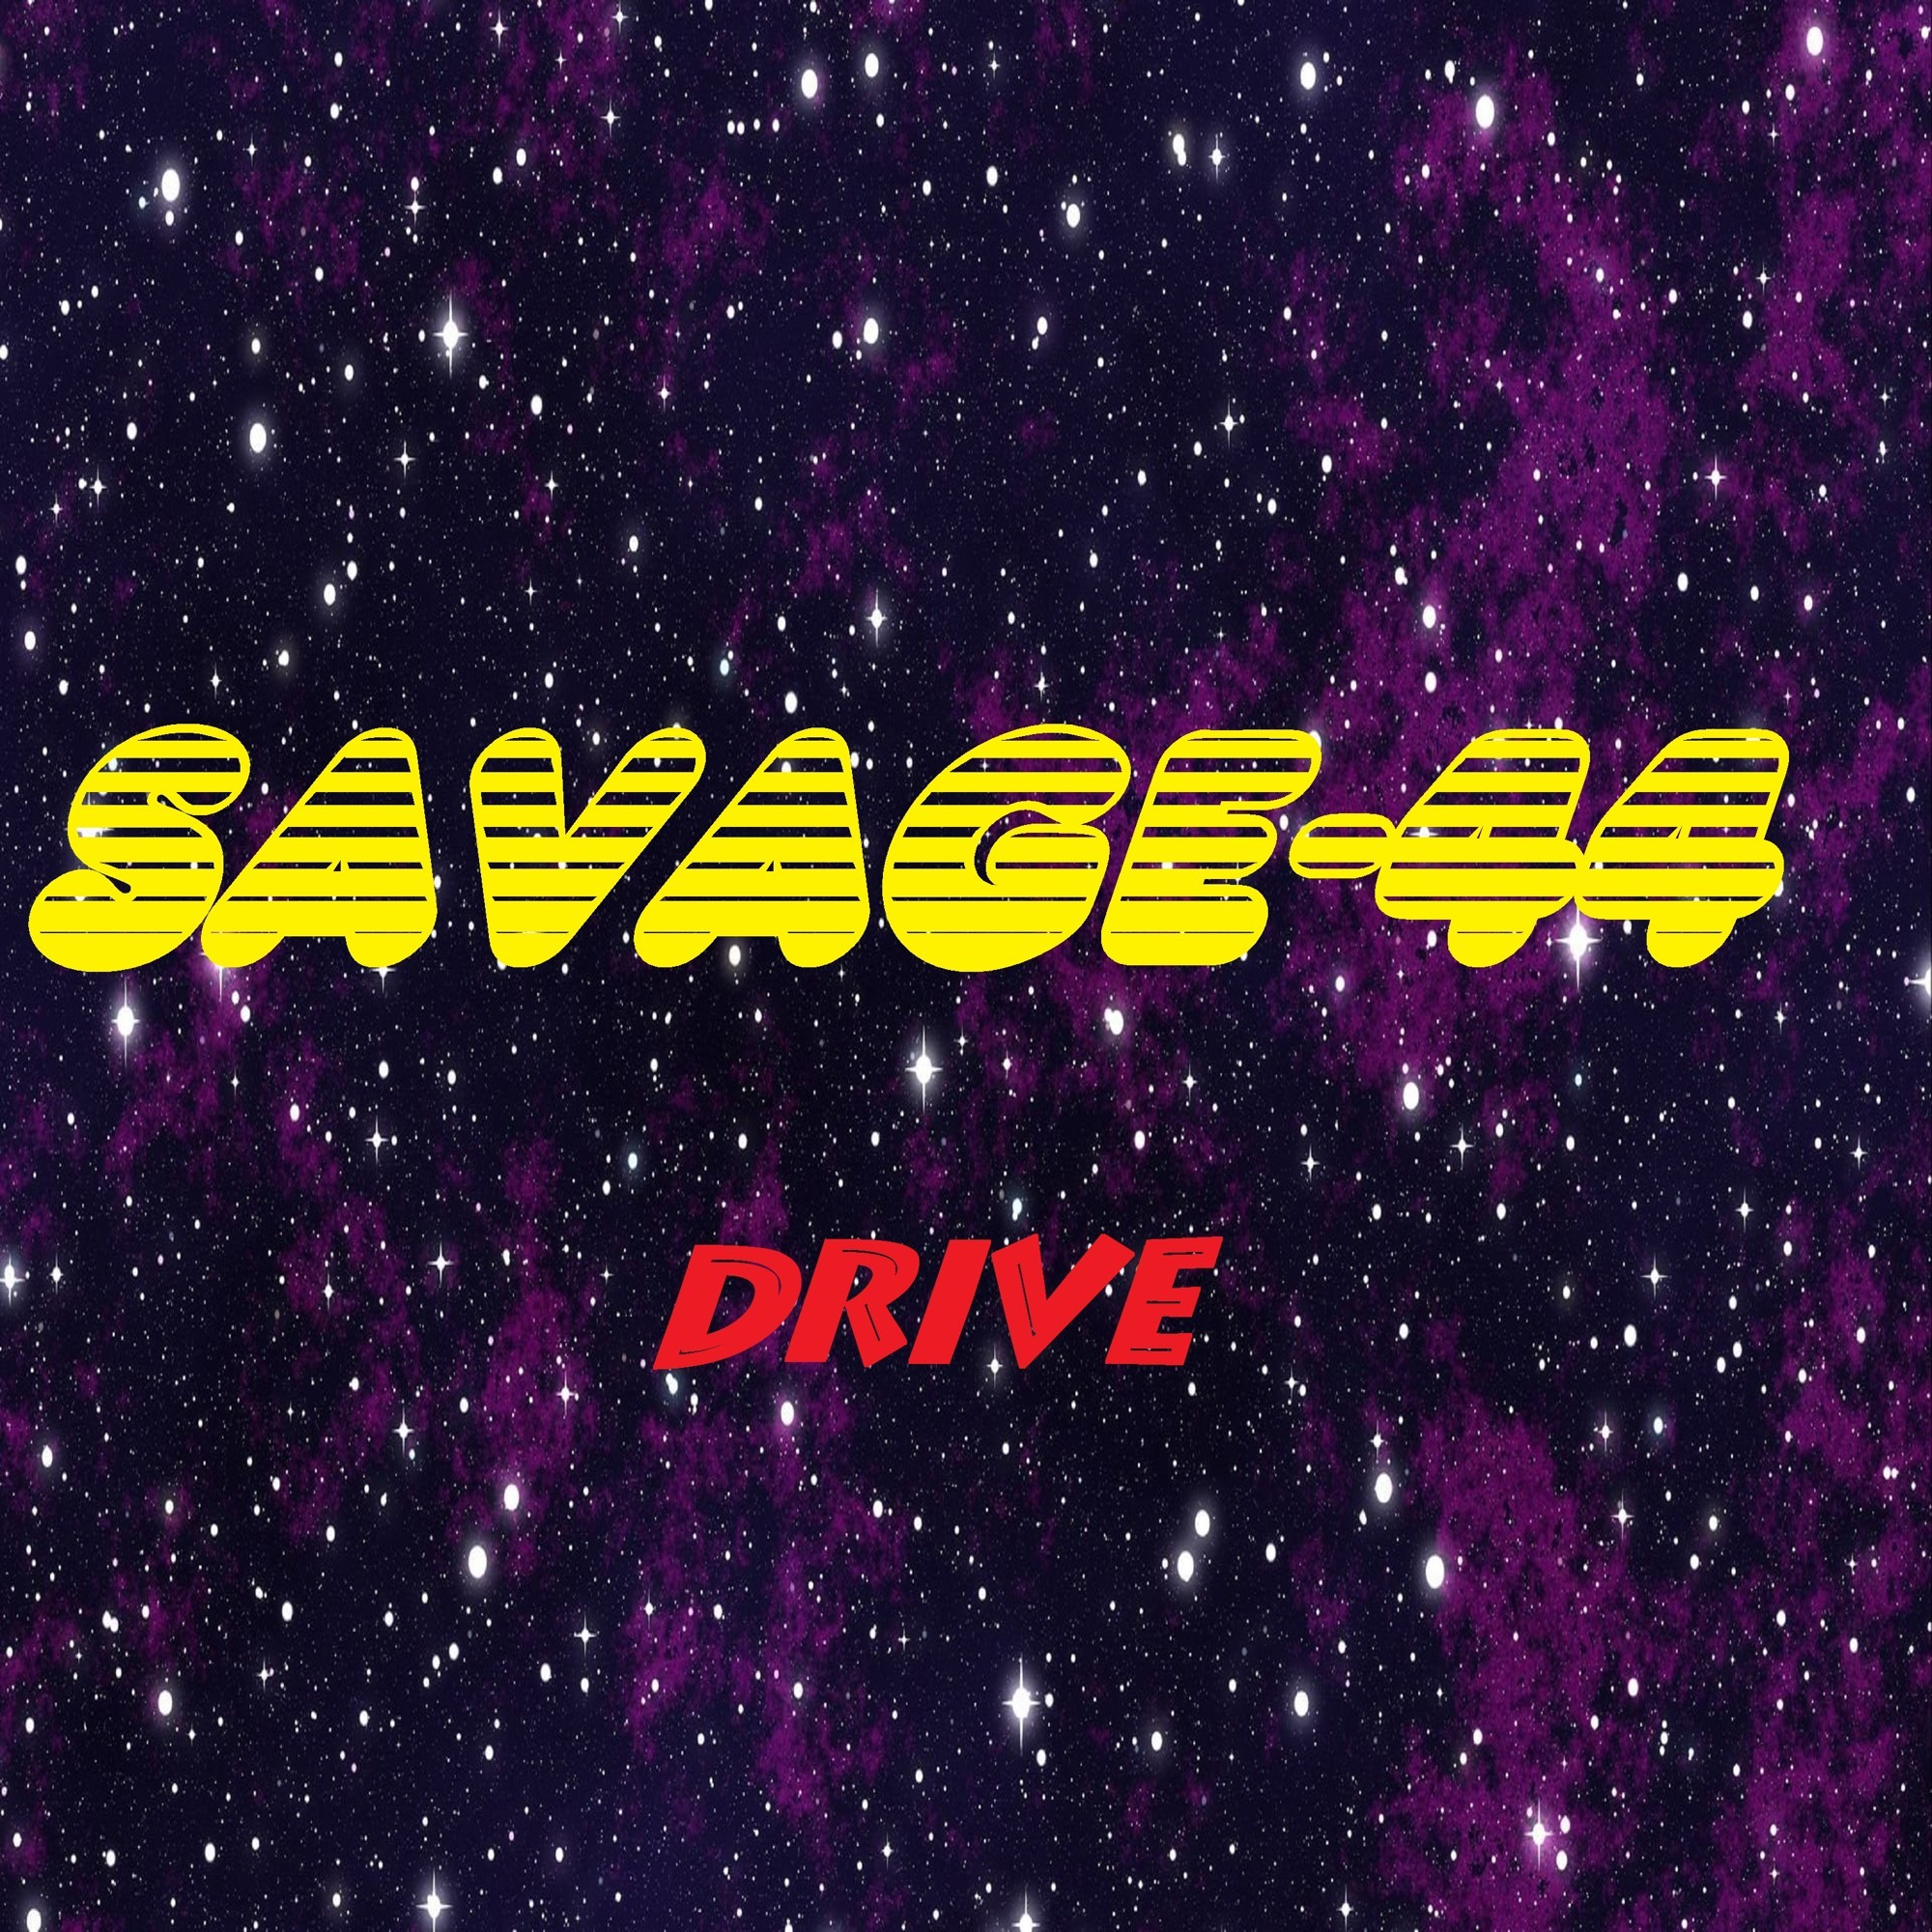 Savage 44 the music ring. DJ Savage 44. Savage 44 Love emotion Eurodance 2021. Savage 44 Love emotion. Savage-44 - Sphere.